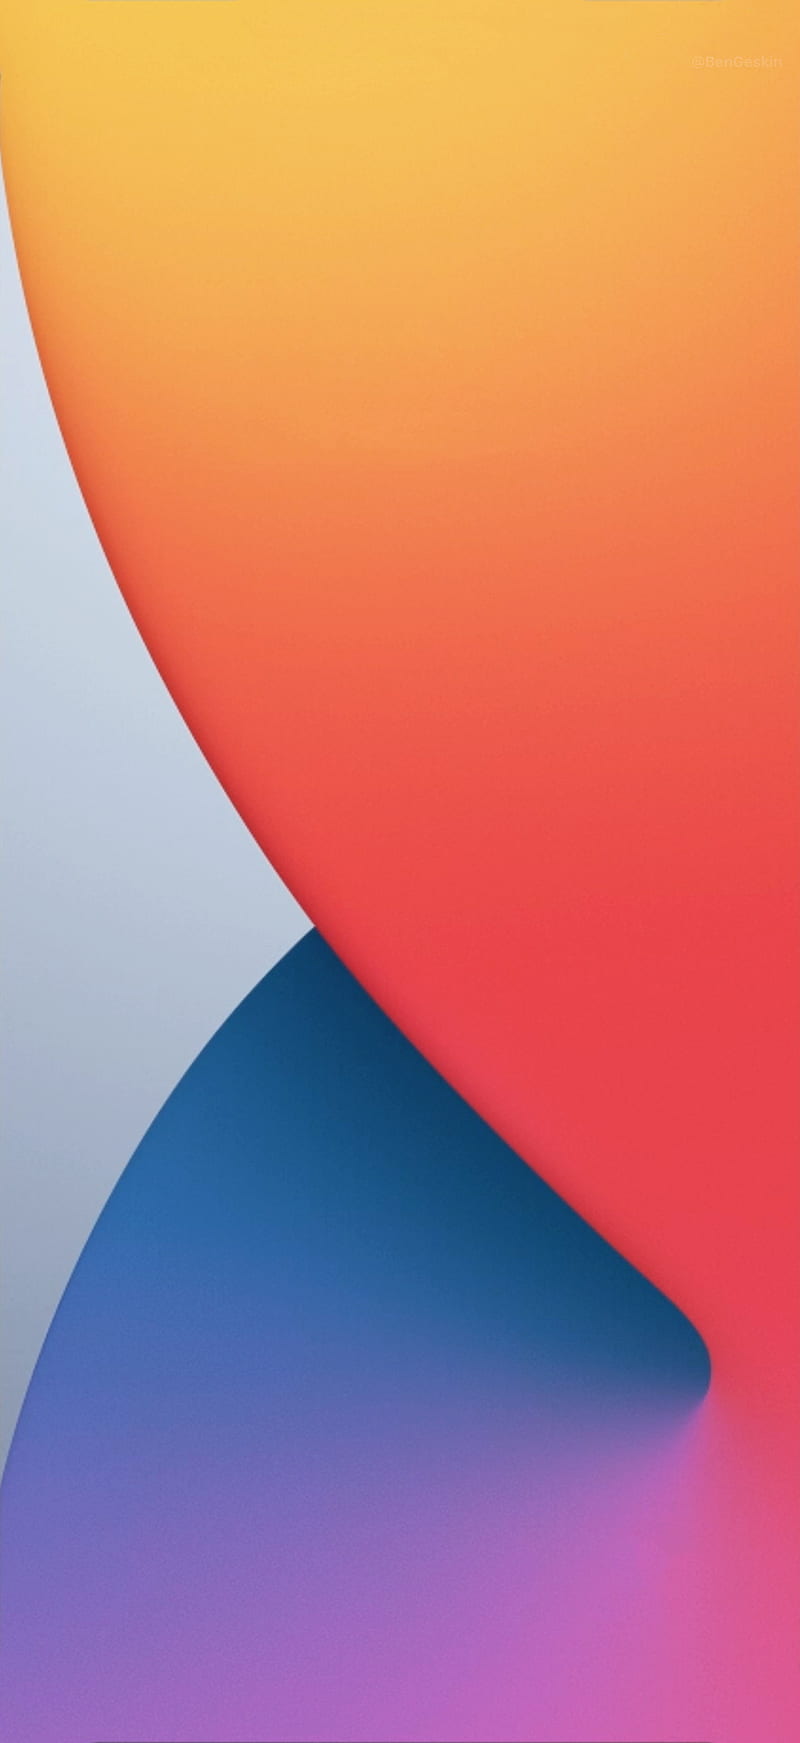 IOS 14, apple, iphone, HD phone wallpaper | Peakpx